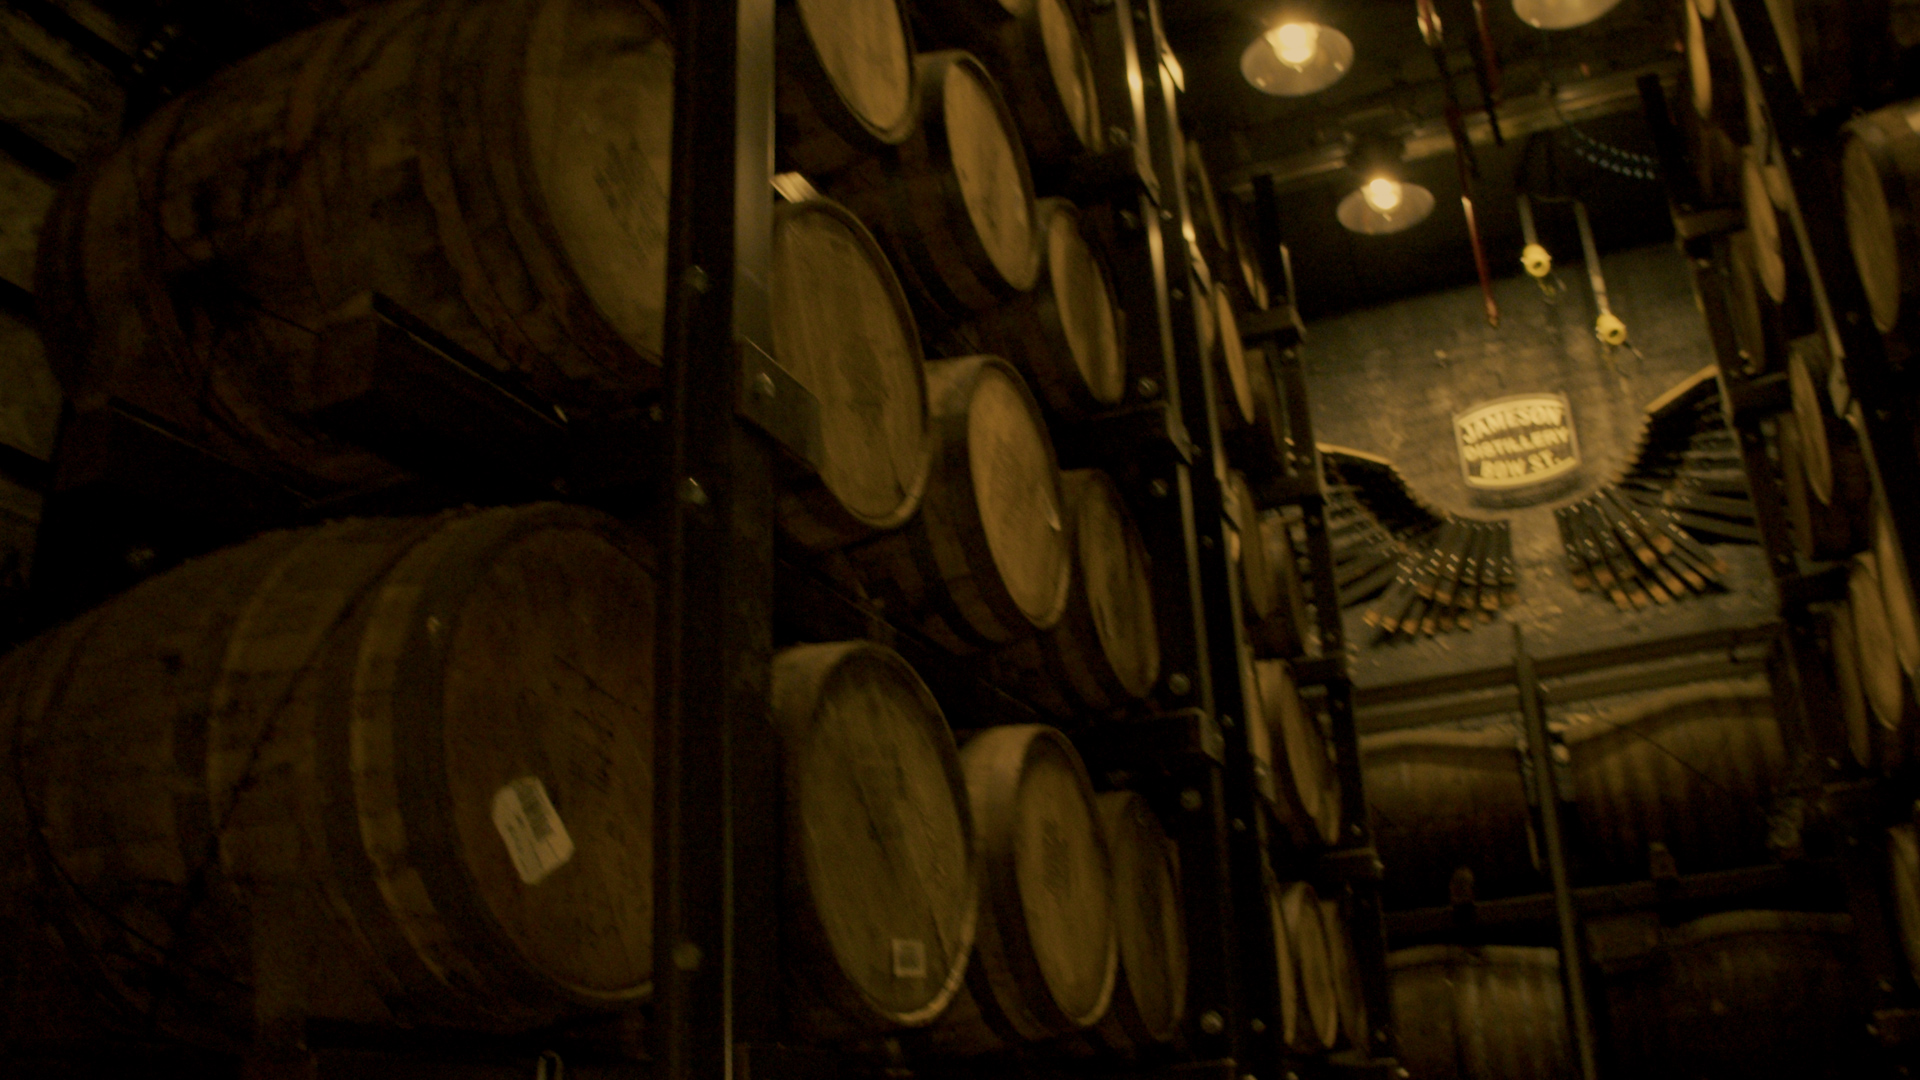 1500 years of Irish whiskey in 300 words